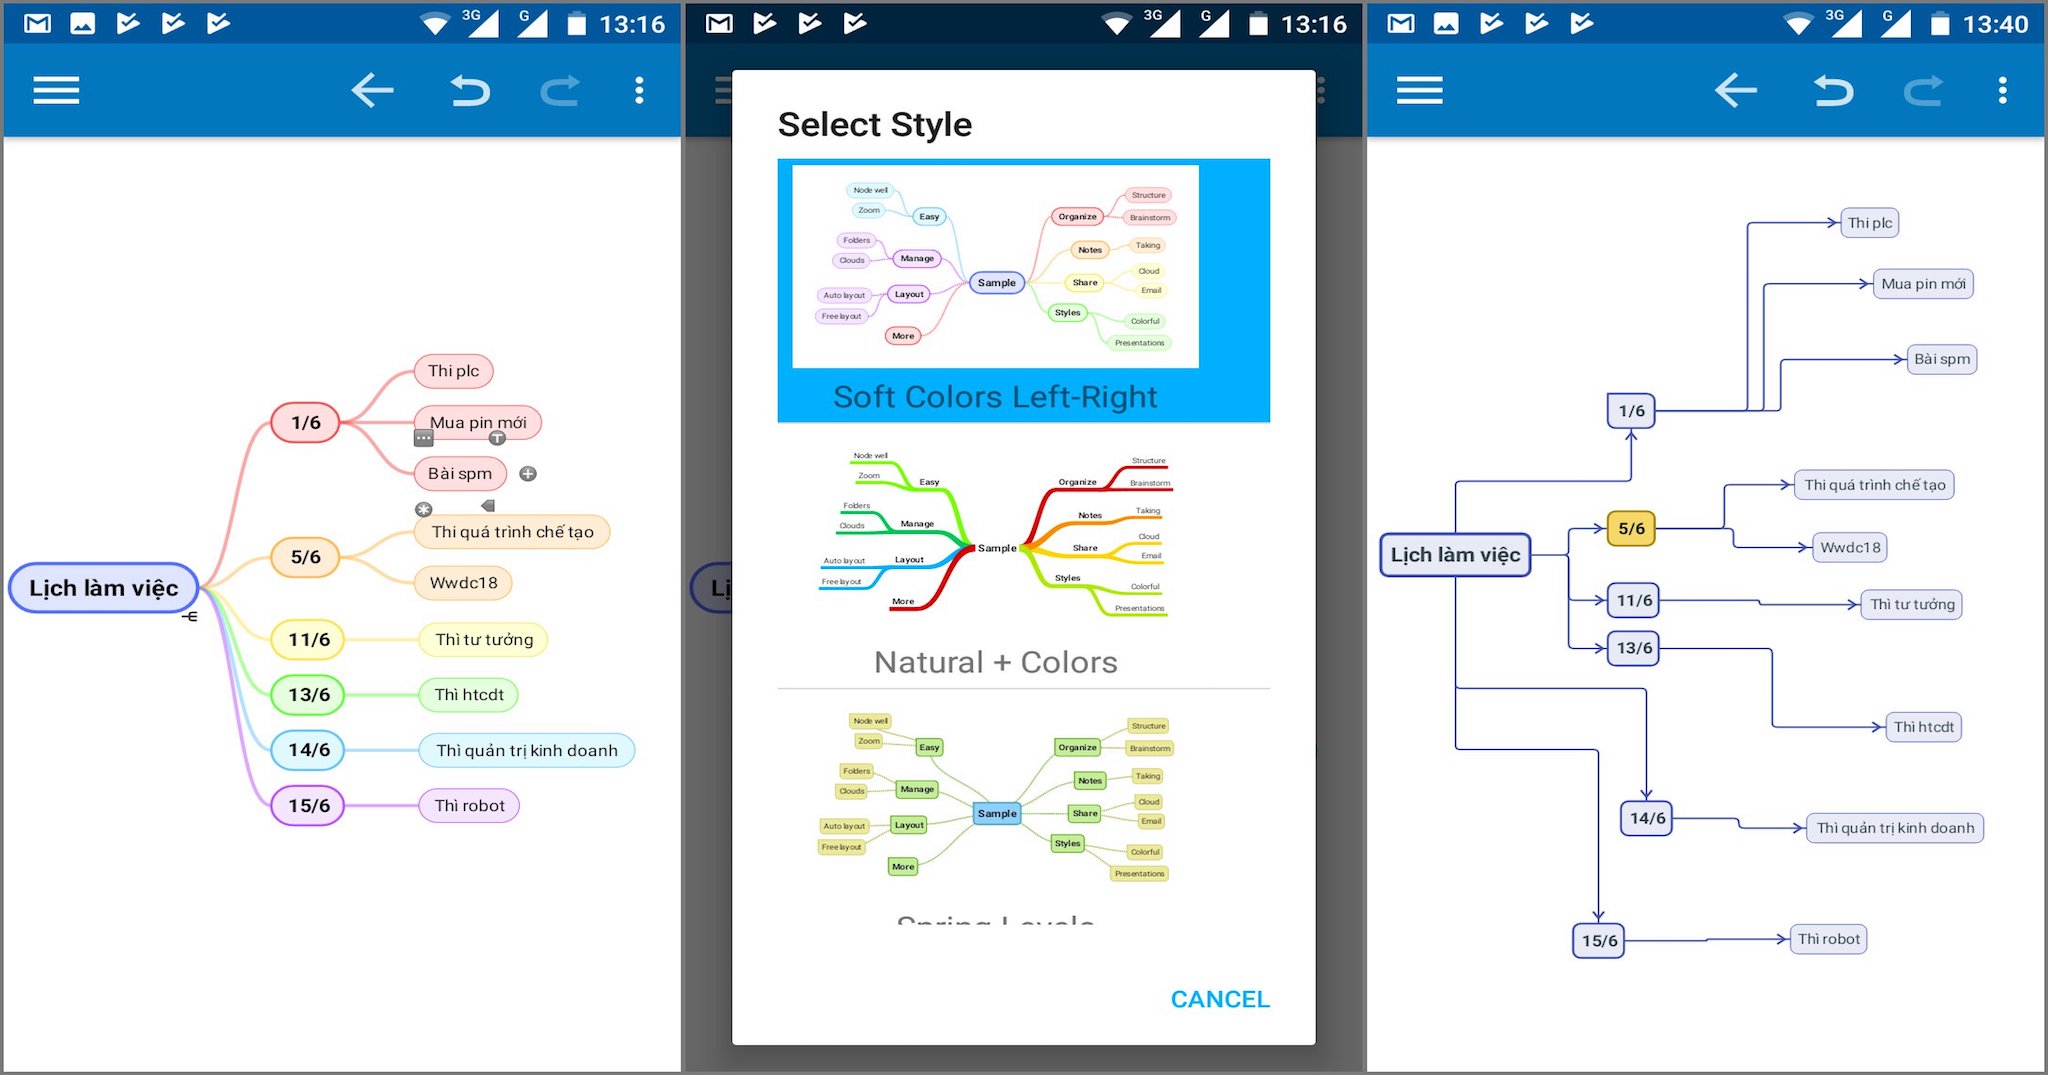 SimpleMind Pro - Ứng dụng Mindmap Android: SimpleMind Pro là lựa chọn hàng đầu cho những người muốn tổ chức ý tưởng của mình một cách rõ ràng và bừng sáng trên Android. Với giao diện thân thiện và đơn giản cùng với nhiều tính năng, SimpleMind Pro giúp bạn viết chú thích, ghi chú và thậm chí vẽ mindmap của mình chỉ với vài chạm.